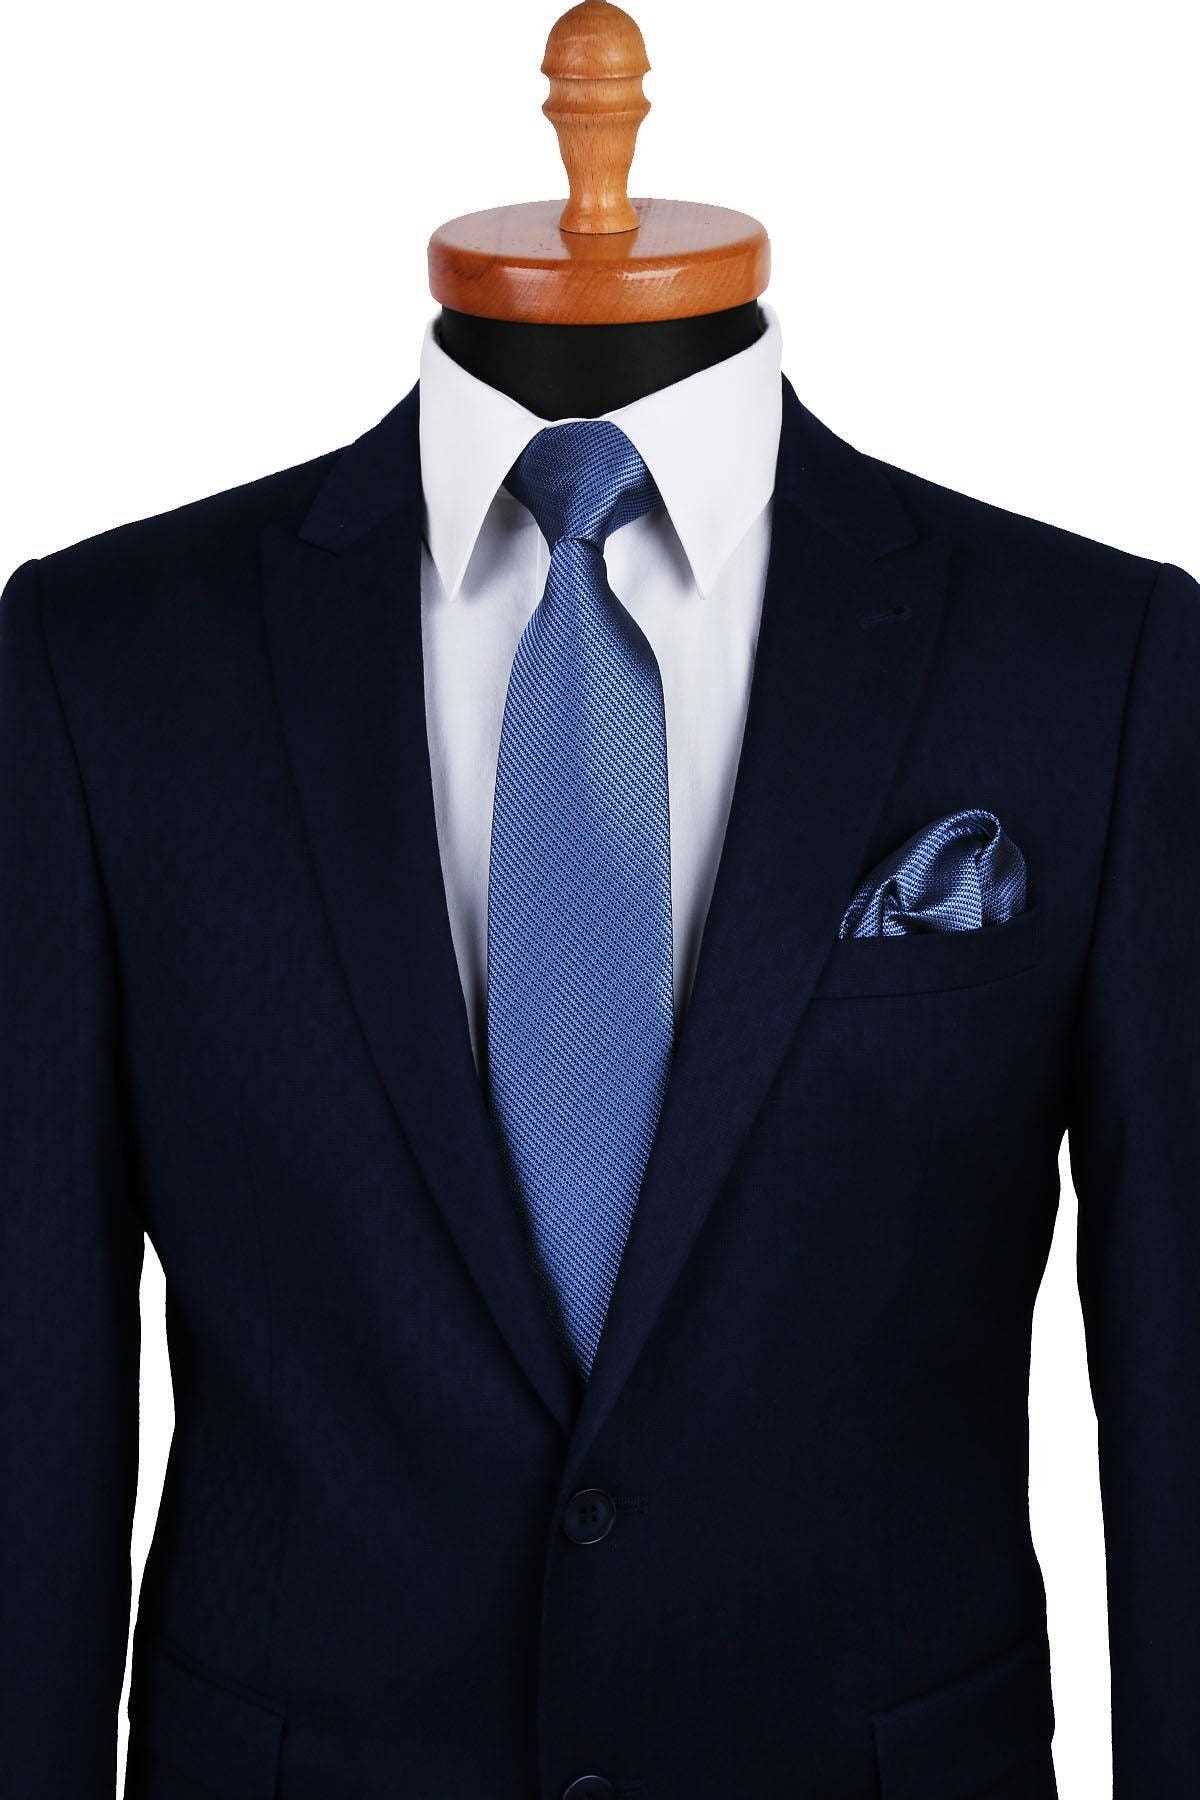 کراوات مردانه پارچه  شیک Kravatkolik رنگ آبی کد ty48494333